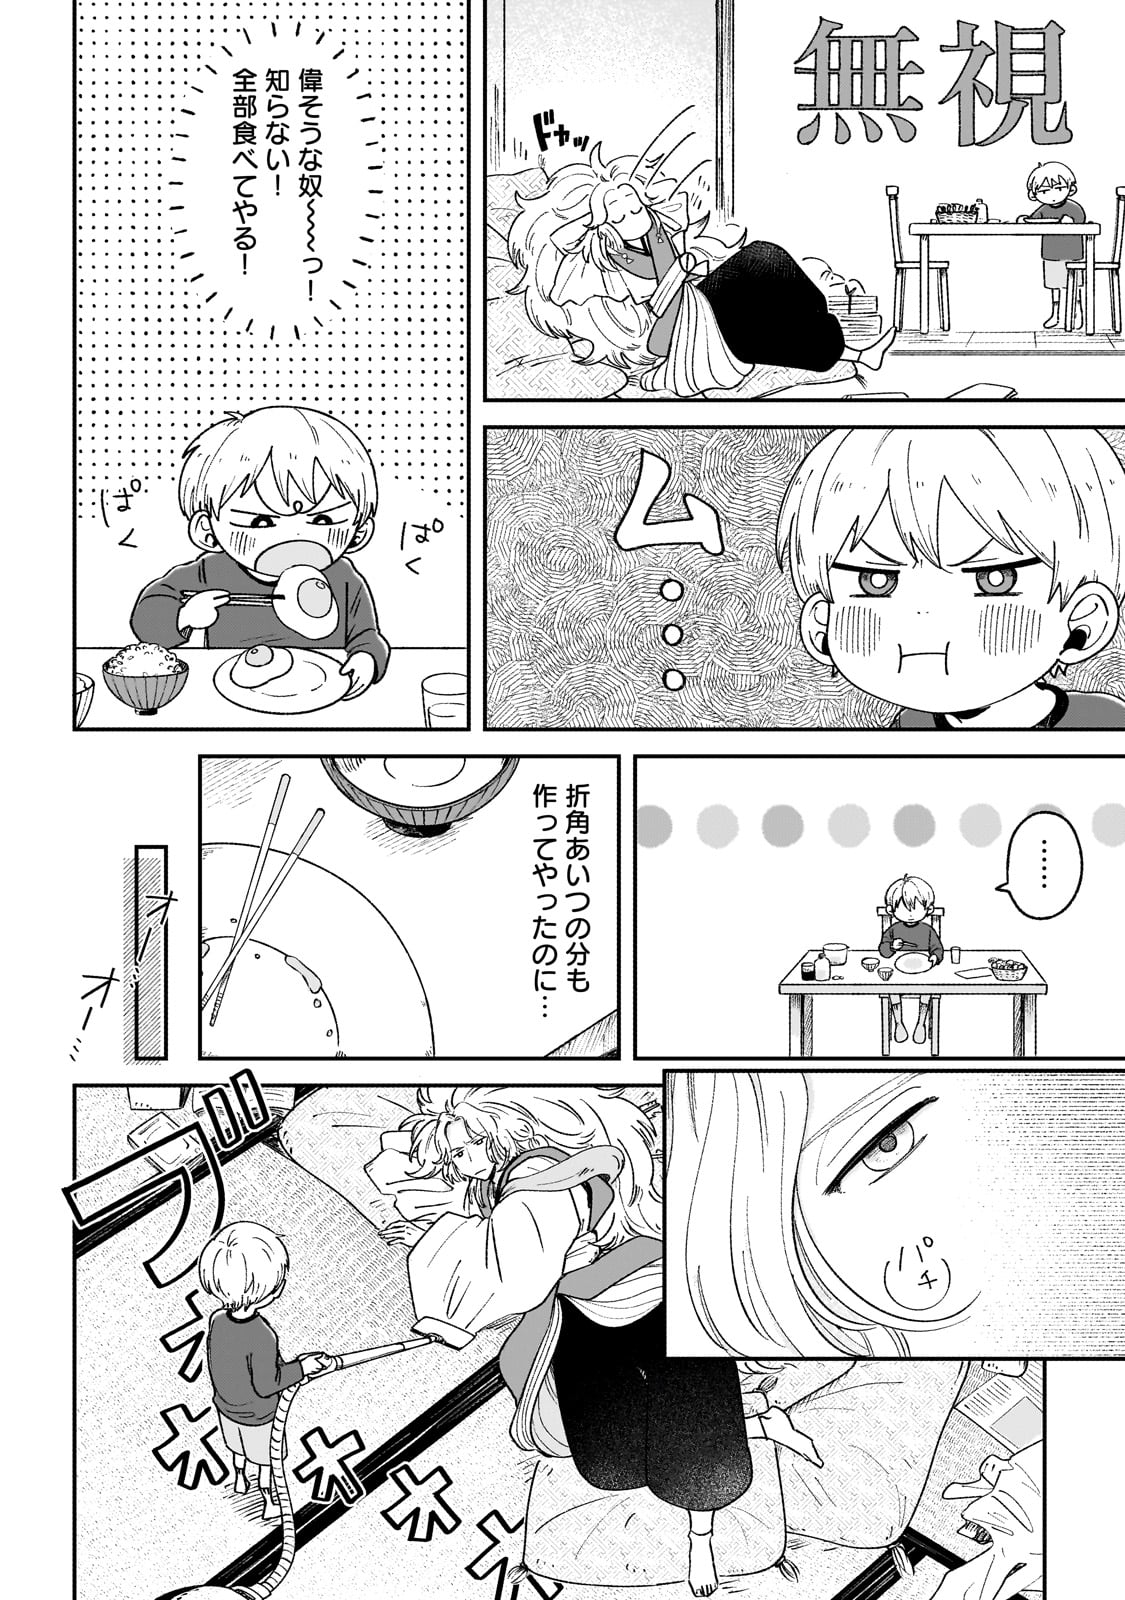 Boku to Ayakashi no 365 Nichi - Chapter 2 - Page 4